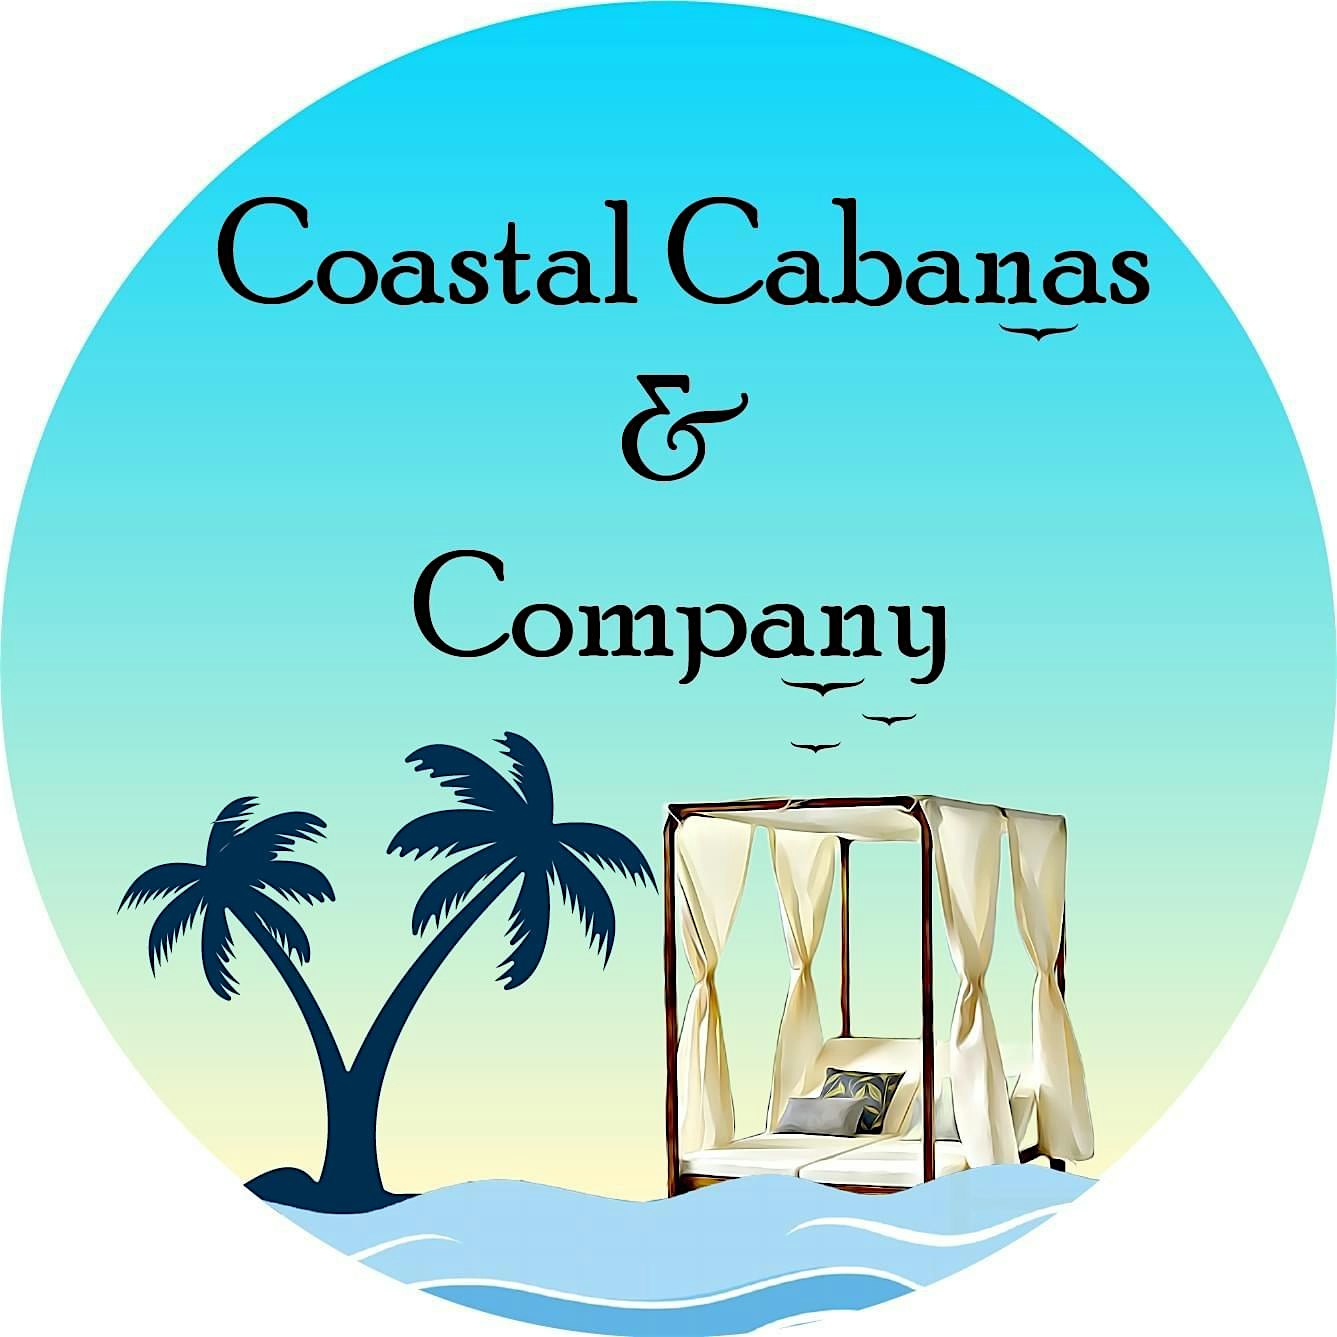 Coastal Cabanas & Company "Grand Opening" Beach Party